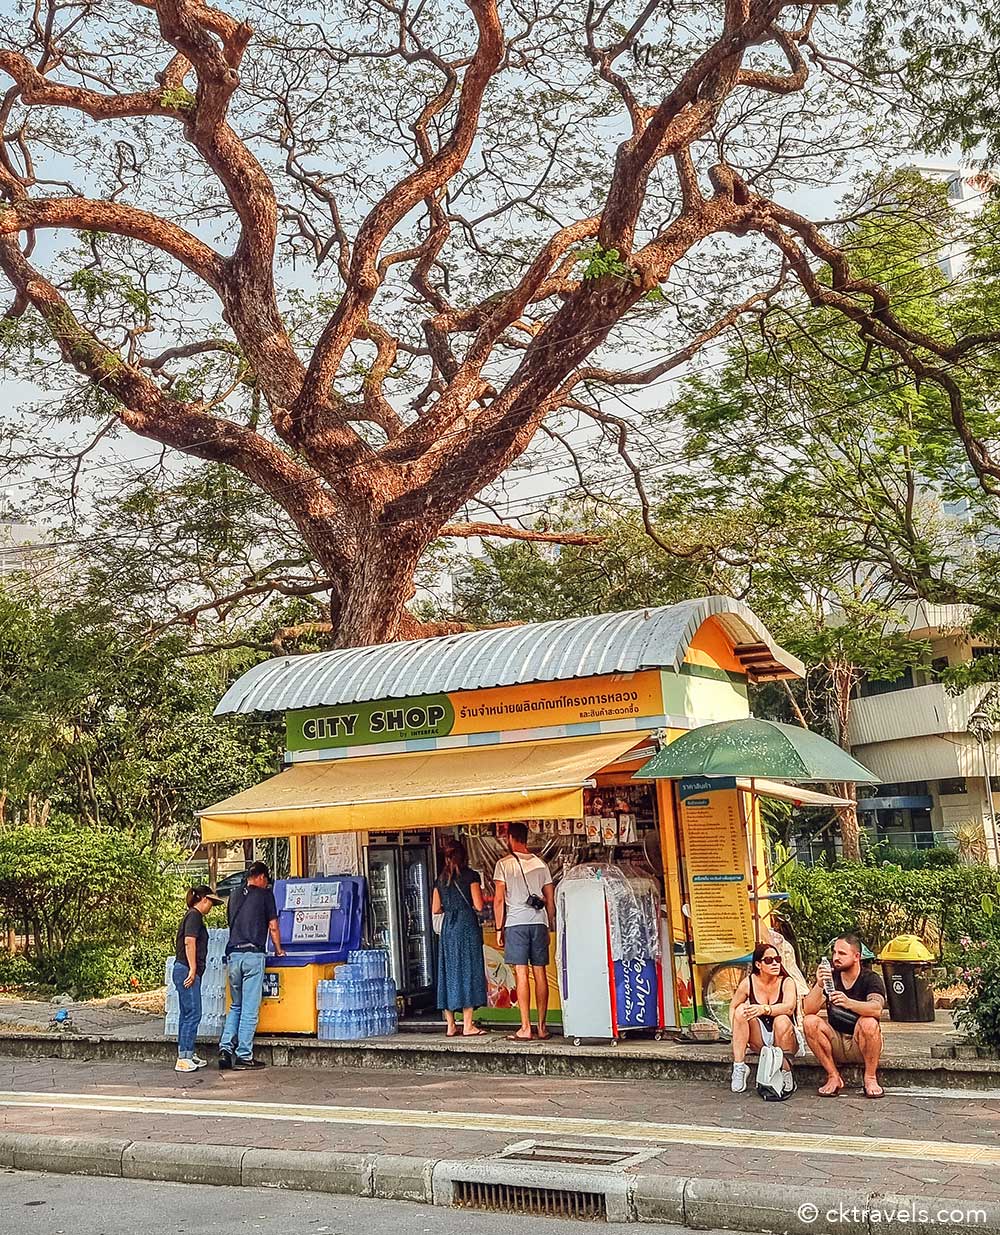 City shop at Lumphini Park Bangkok